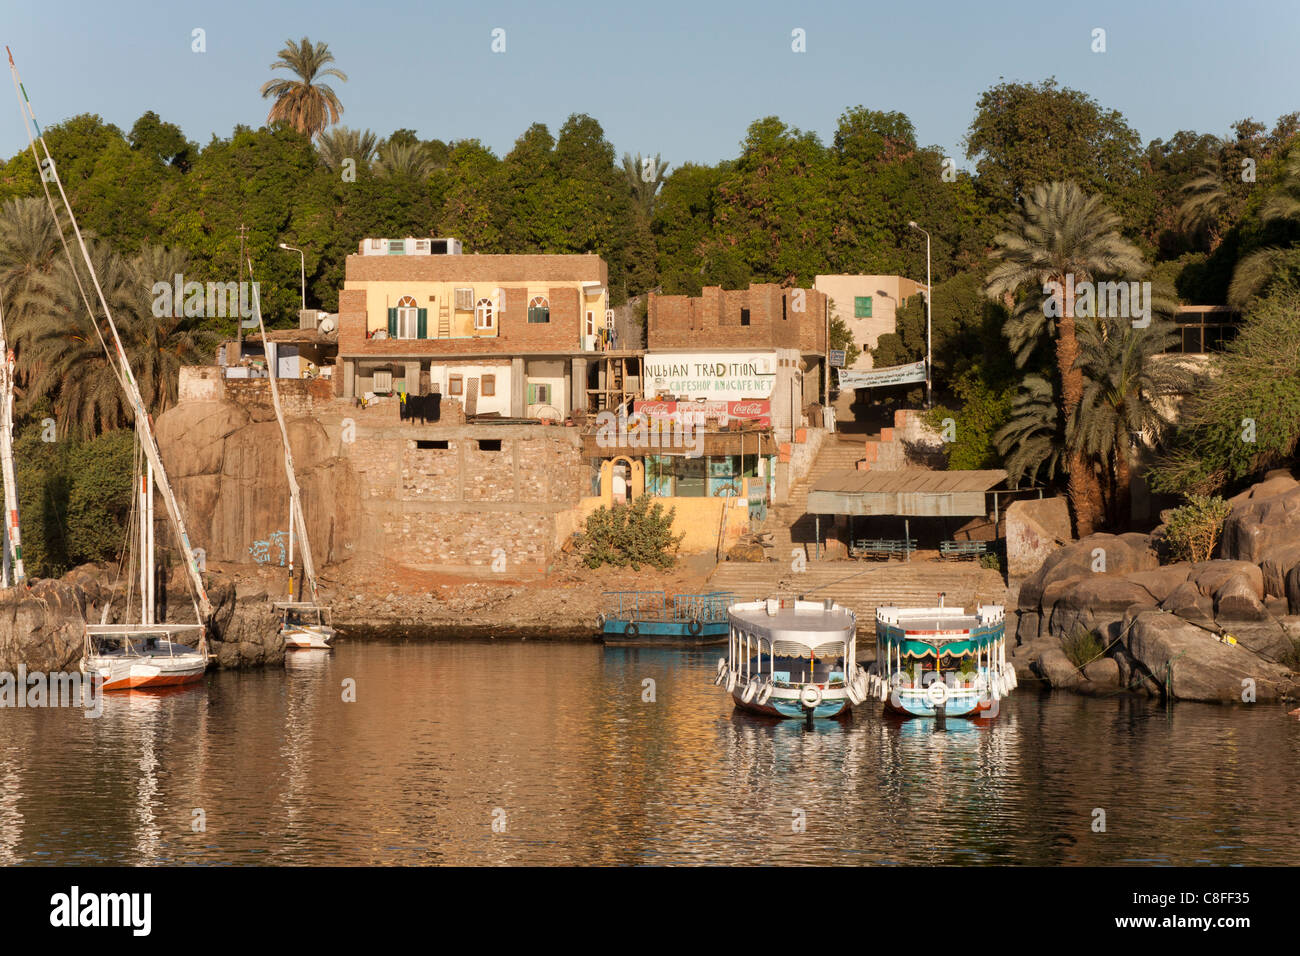 am späten Nachmittag Schuss Feluken und Wassertaxis vor Anker vor einem kleinen Dorf am Fluss Nil, spiegelt sich in ruhigem Wasser Stockfoto